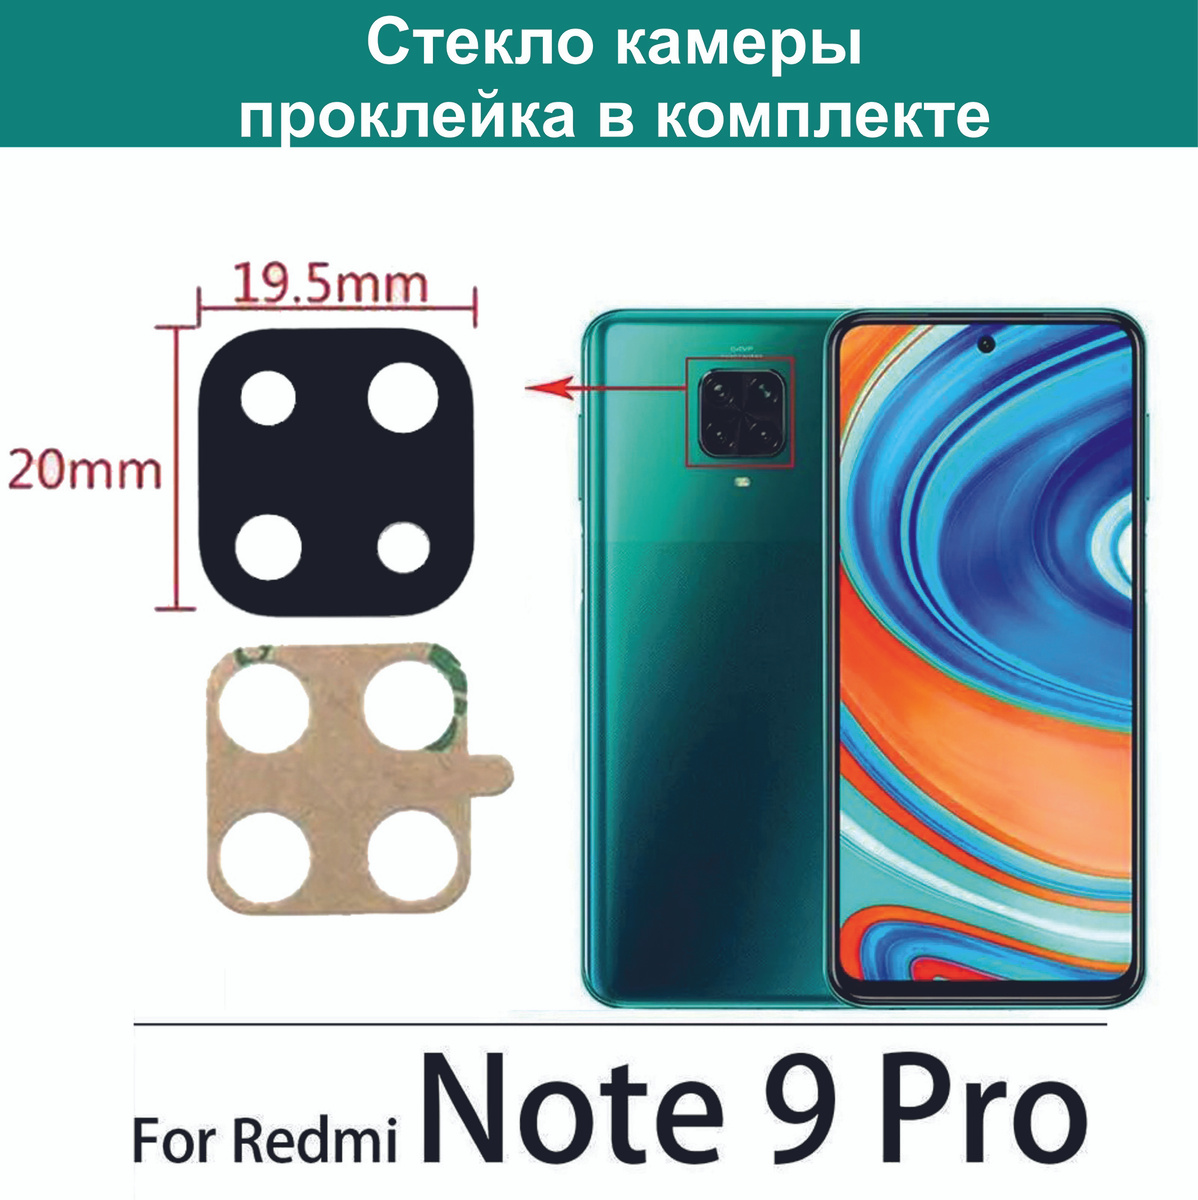 Note 9 Pro Фото